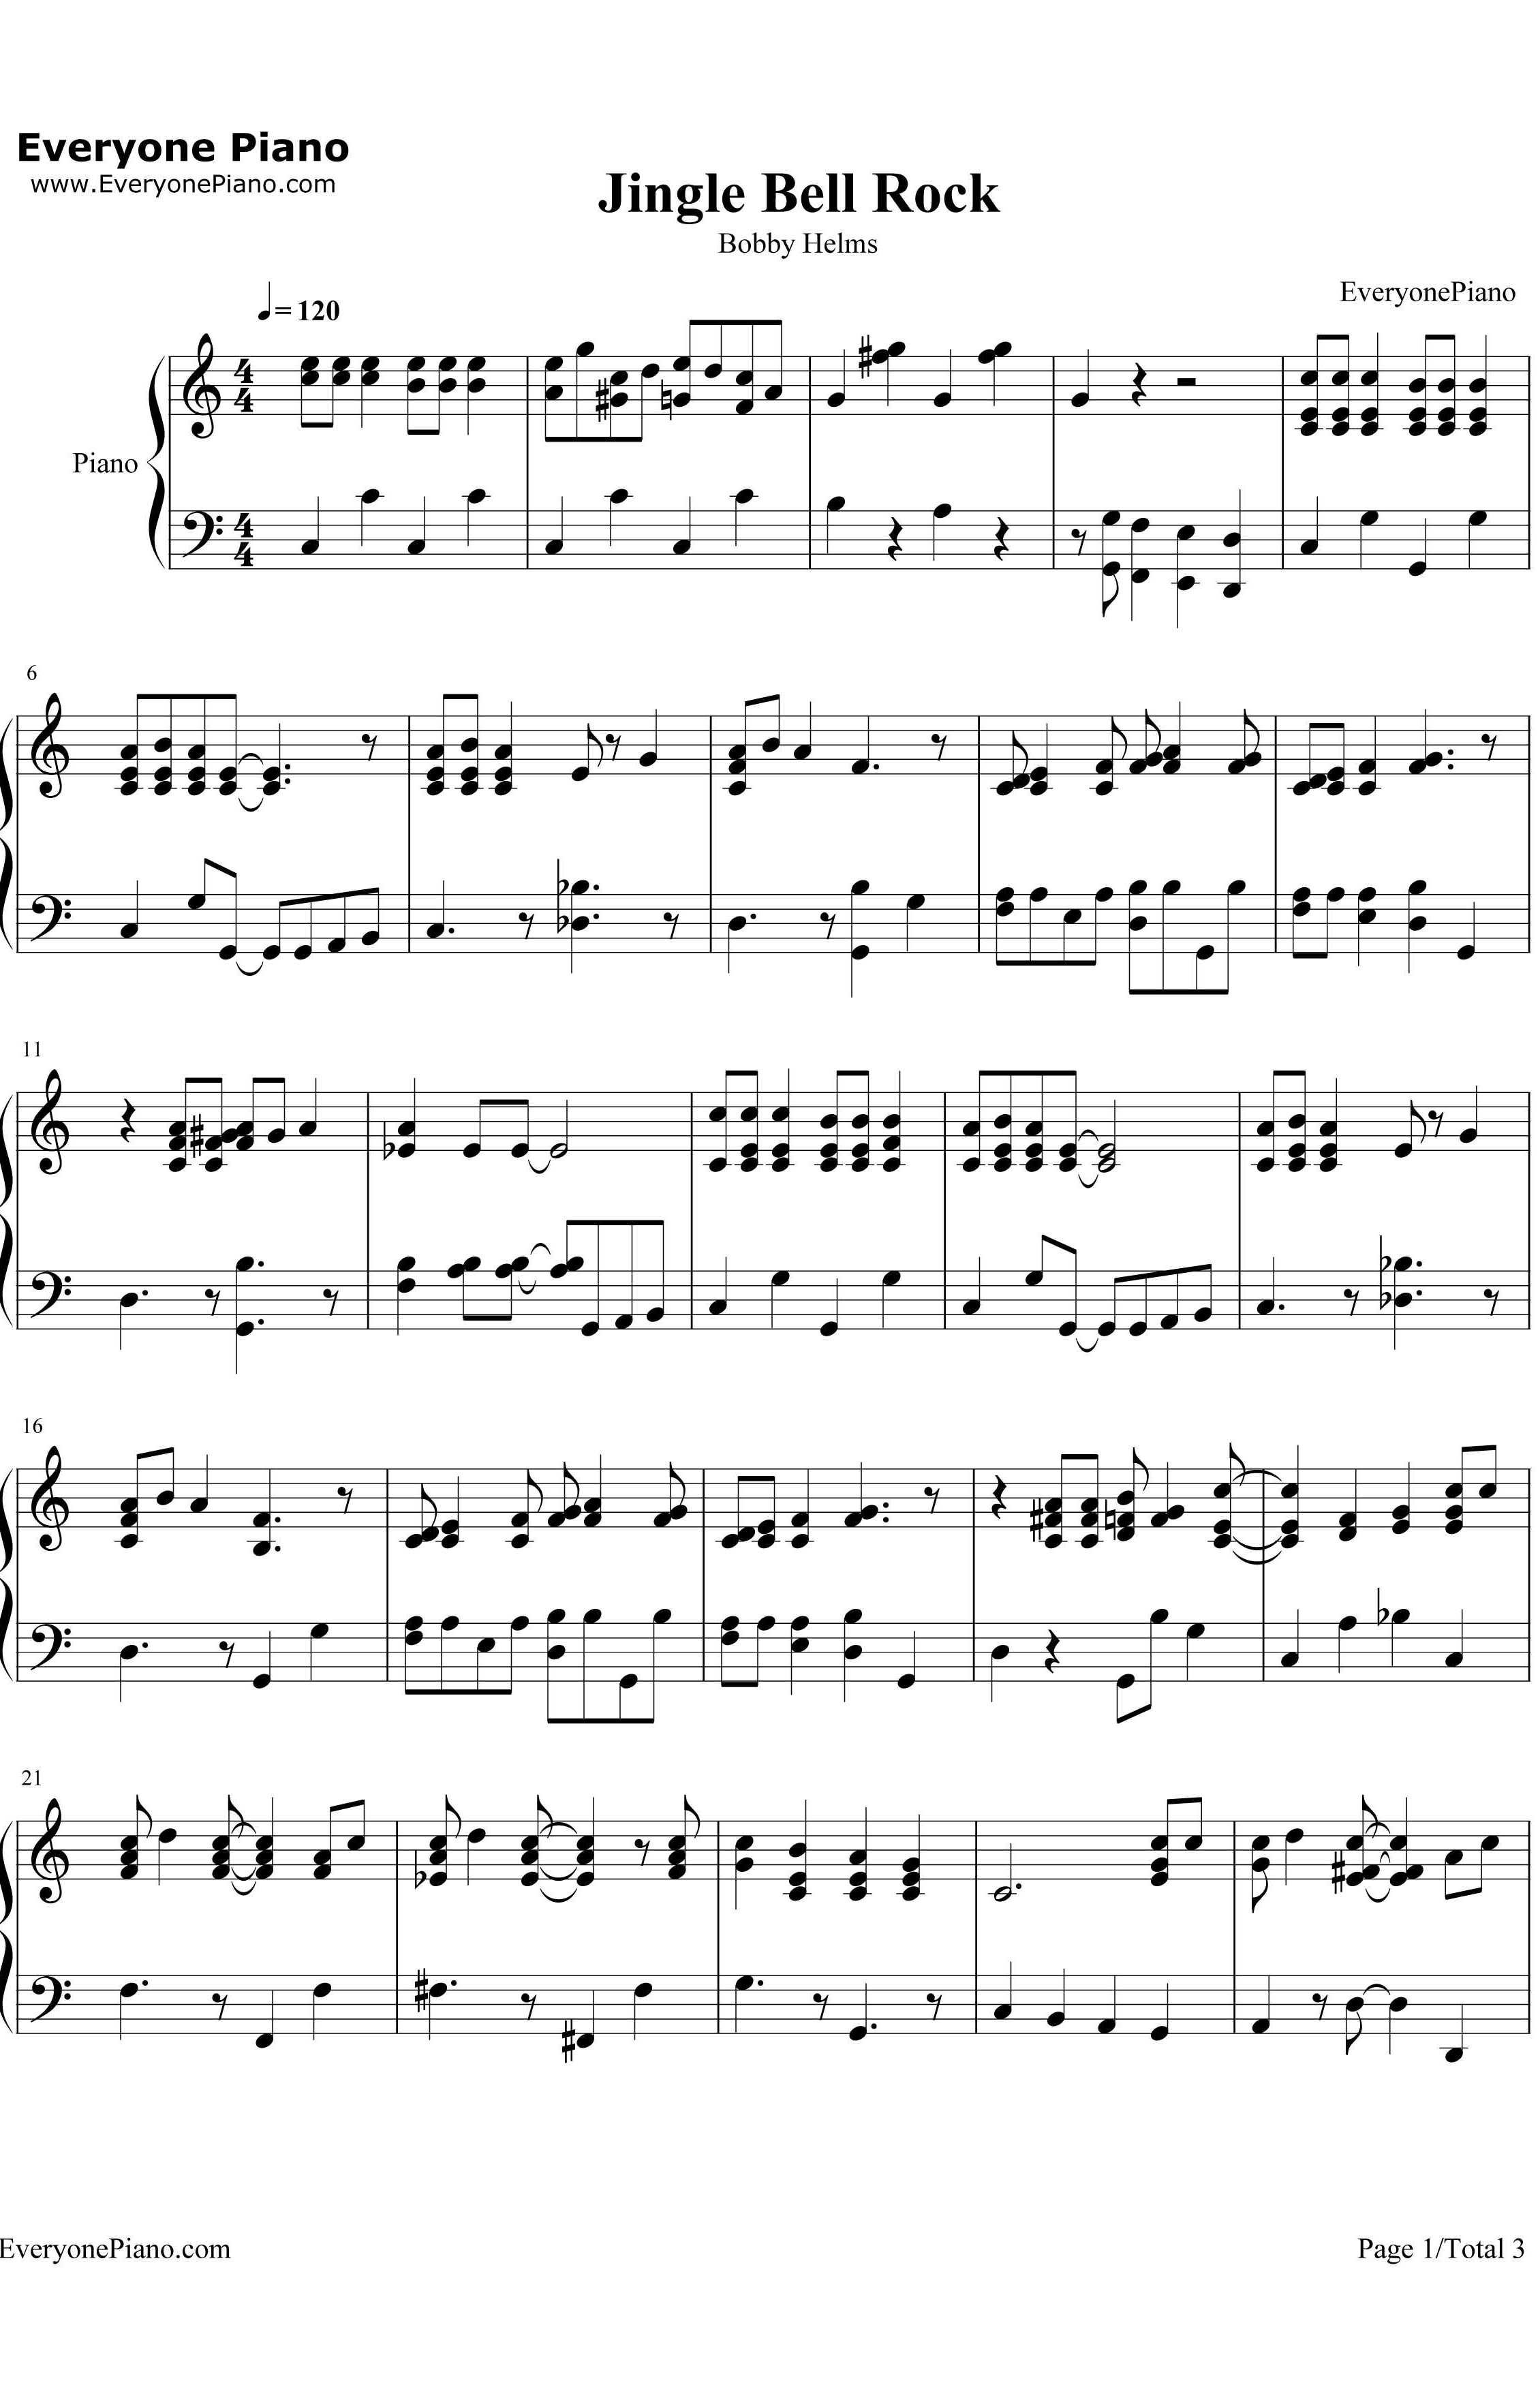 Jingle Bell Rock钢琴谱-BobbyHelms1